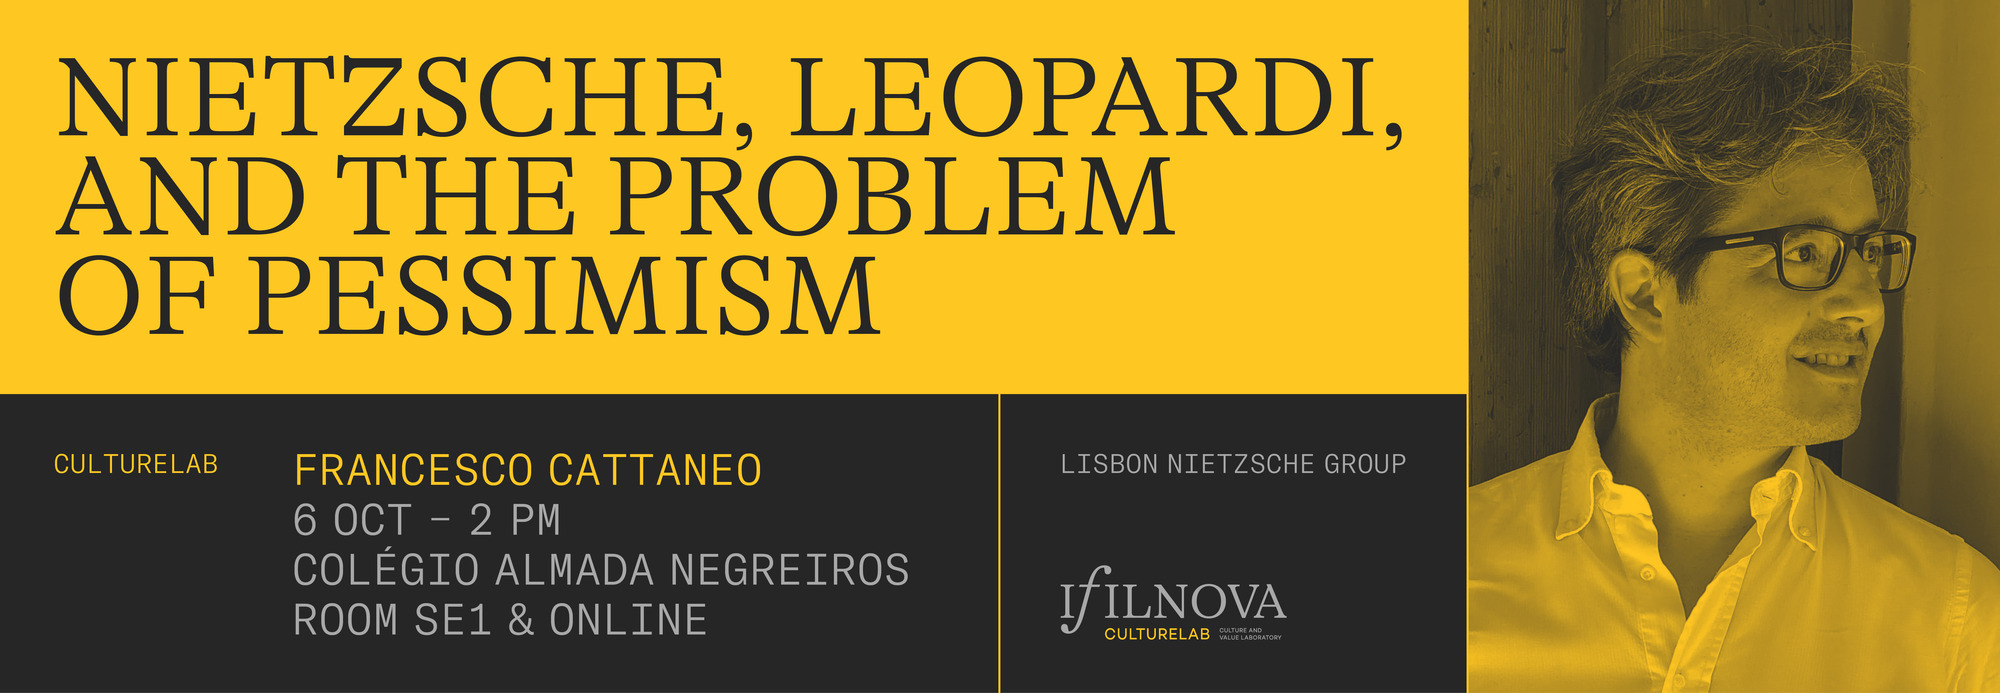 Banner Nietzsche Leopardi e o Problema do Pessimismo